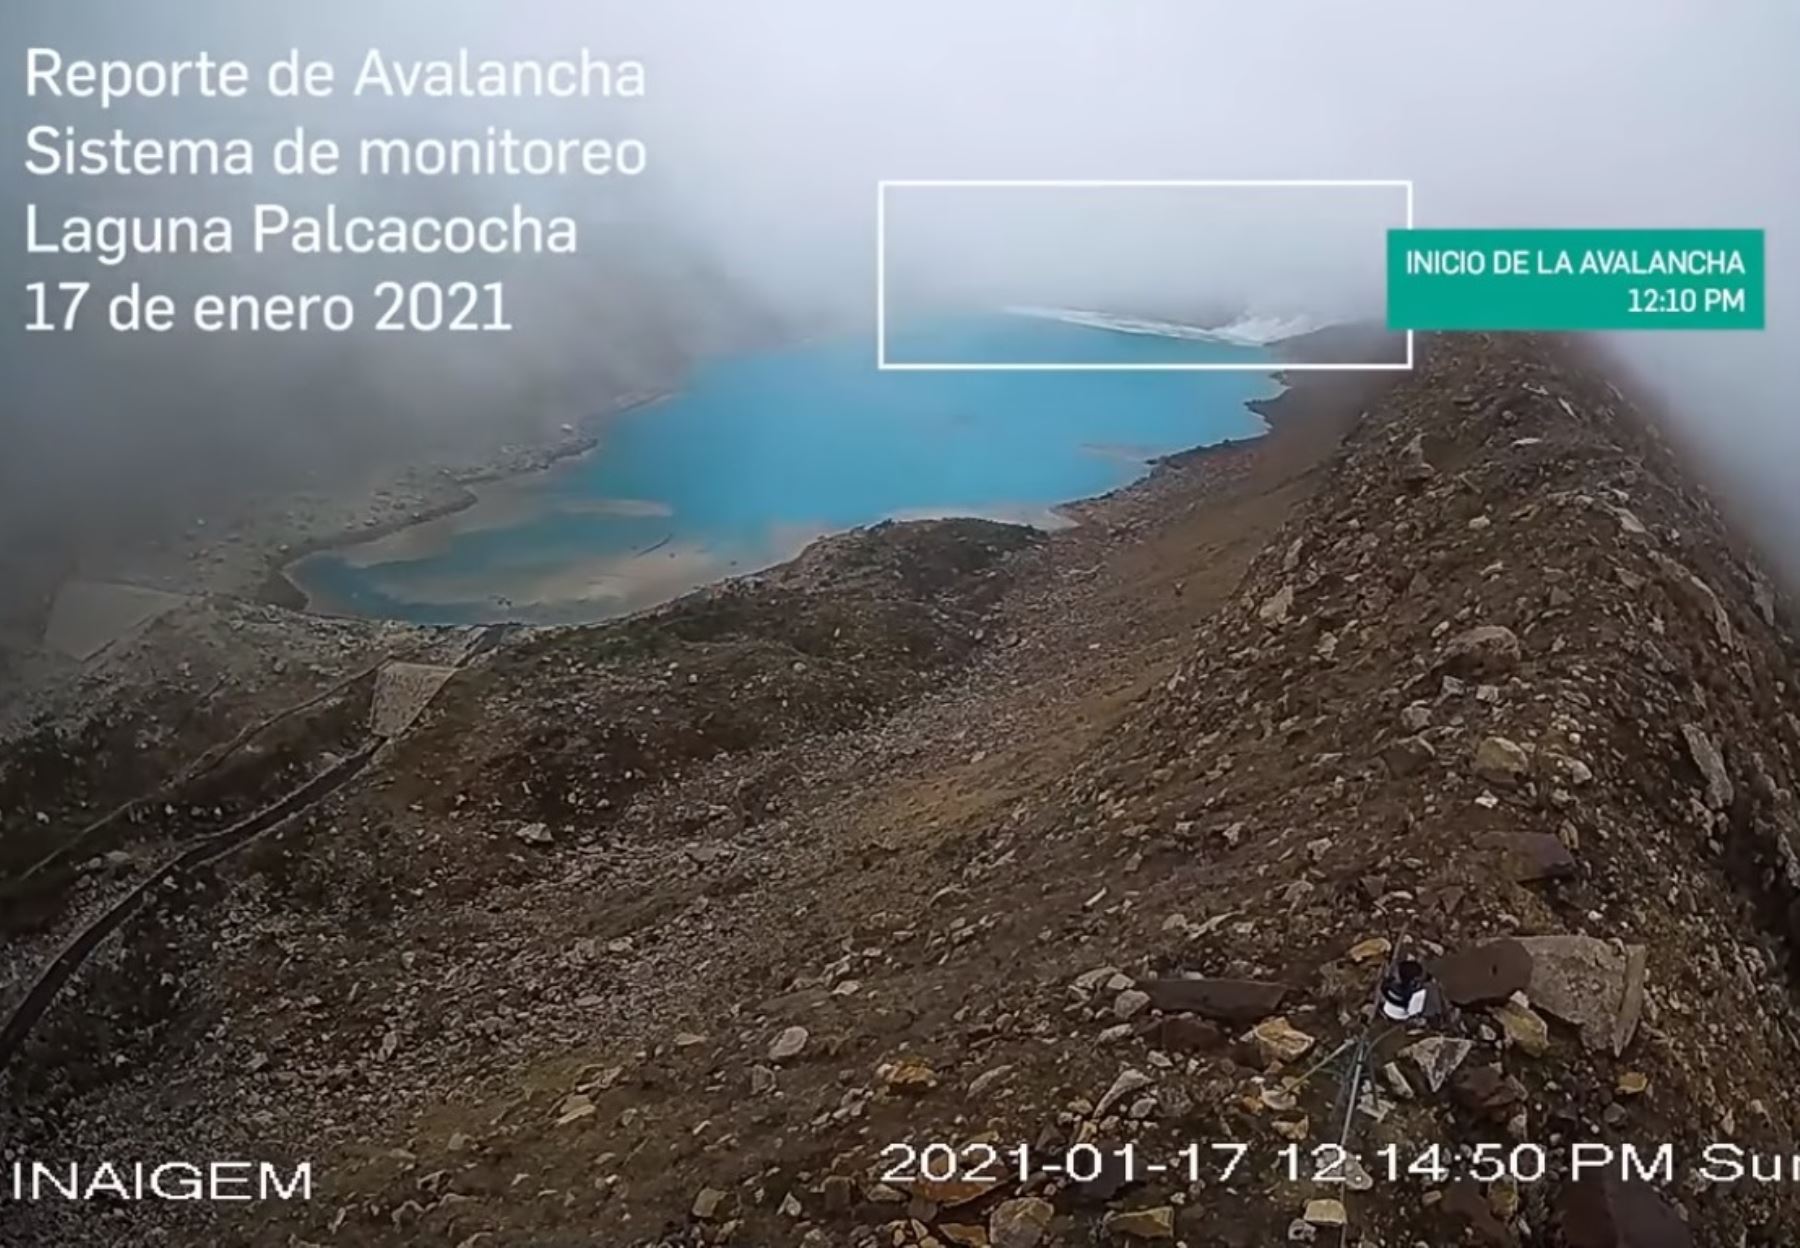 Inaigem confirmó que una avalancha de hielo y rocas se precipitó ayer sobre la laguna Palcacocha, en Áncash, sin causar daños personales o materiales. ANDINA/Difusión